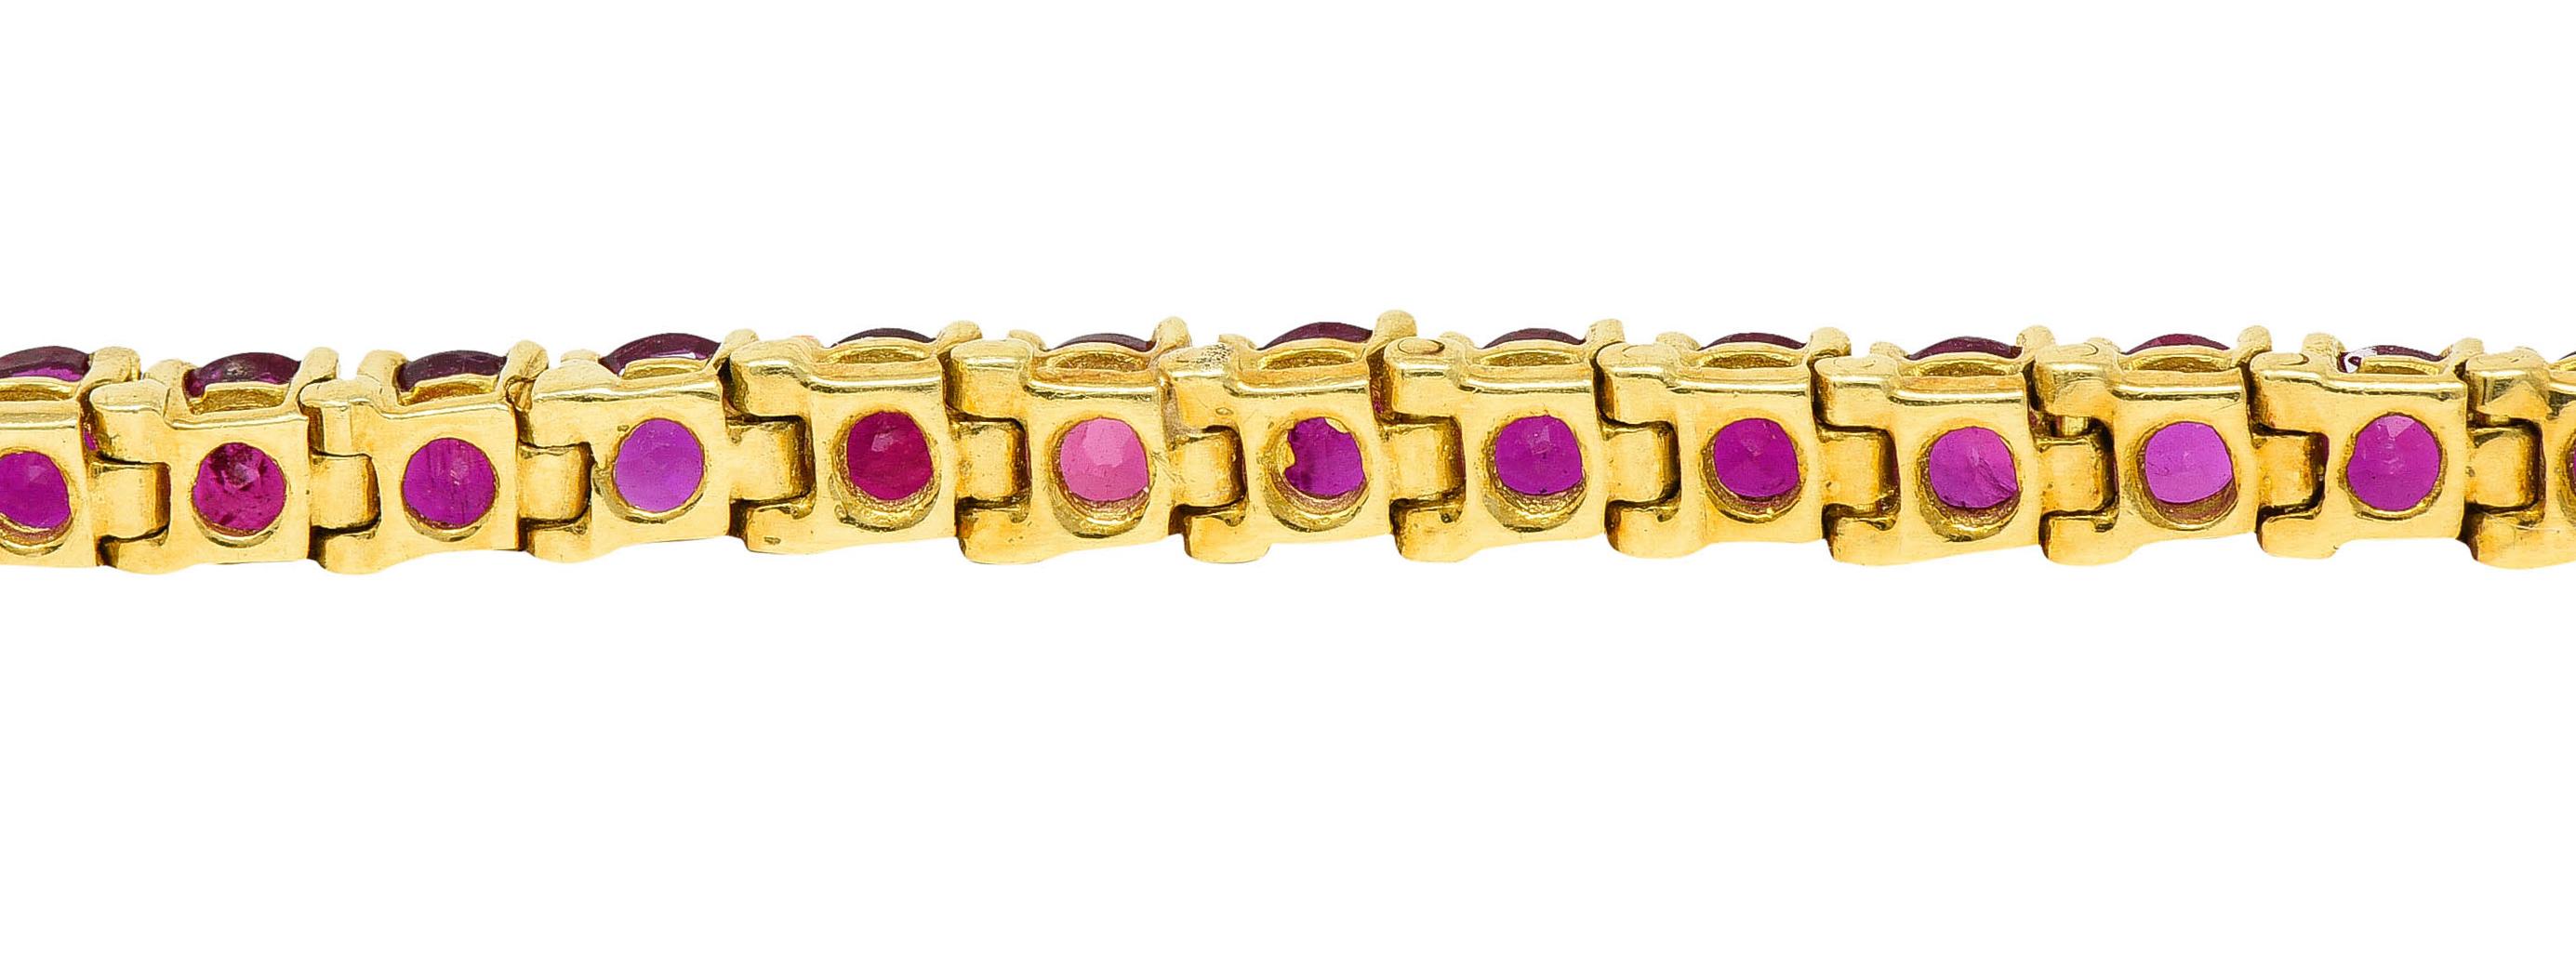 Van Cleef & Arpels 7.50 Carats Ruby 18 Karat Gold Line Bracelet 1970's Vintage 1